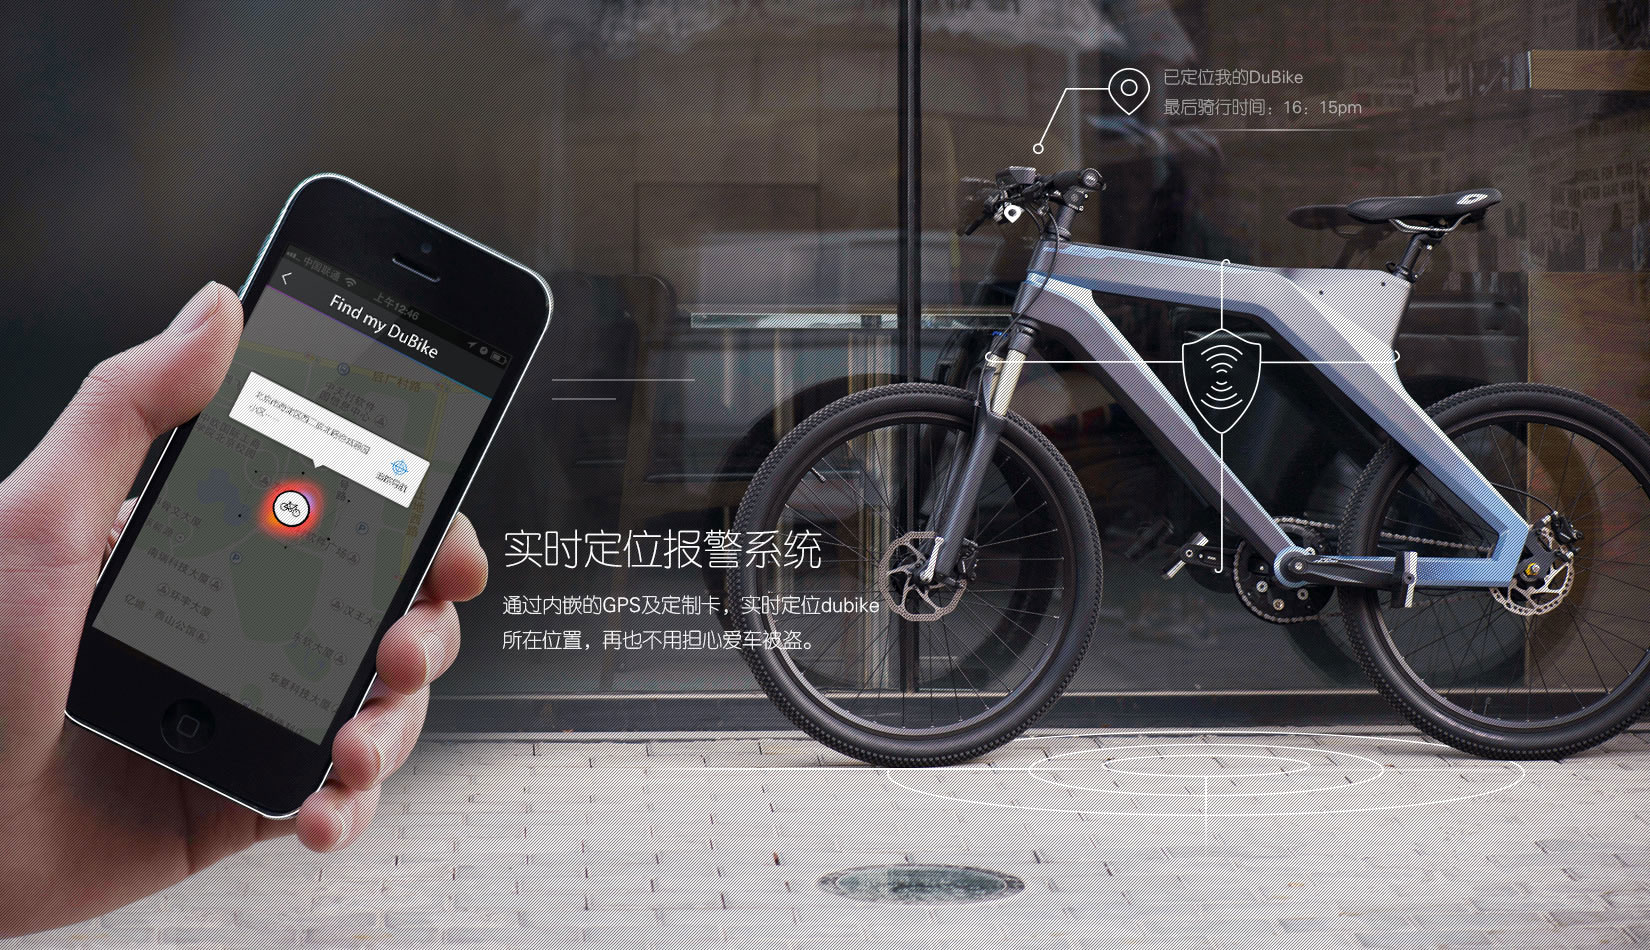 китайский велосипед Dubike производит электроэнергию